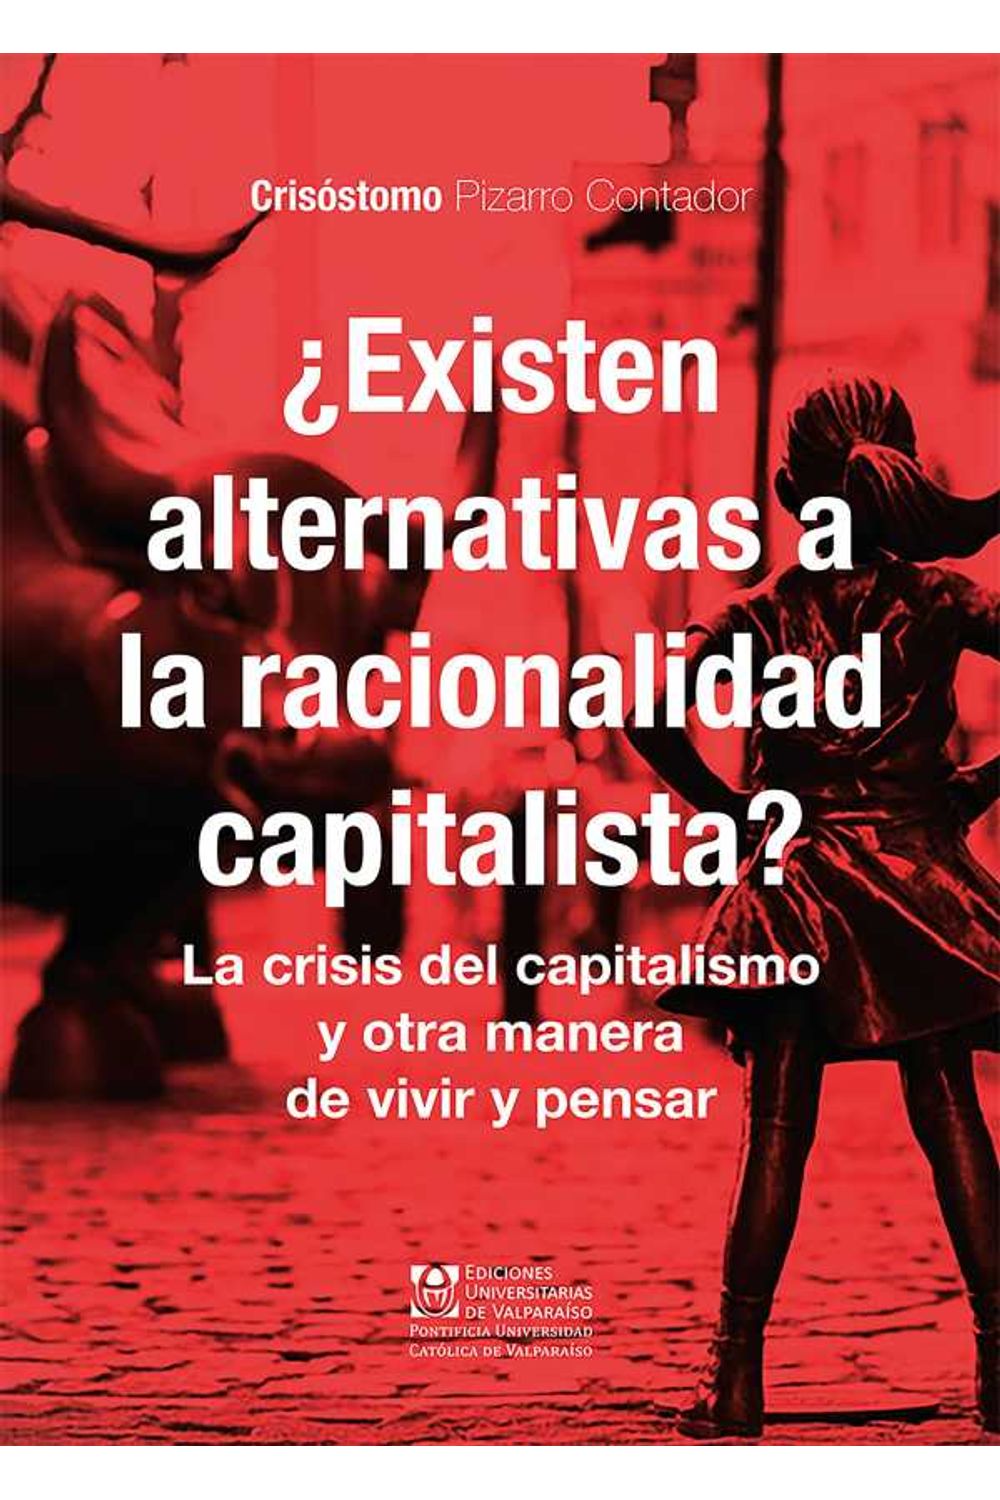 bw-iquestexisten-alternativas-a-la-racionalidad-capitalista-ediciones-universitarias-de-valparaso-9789561708938